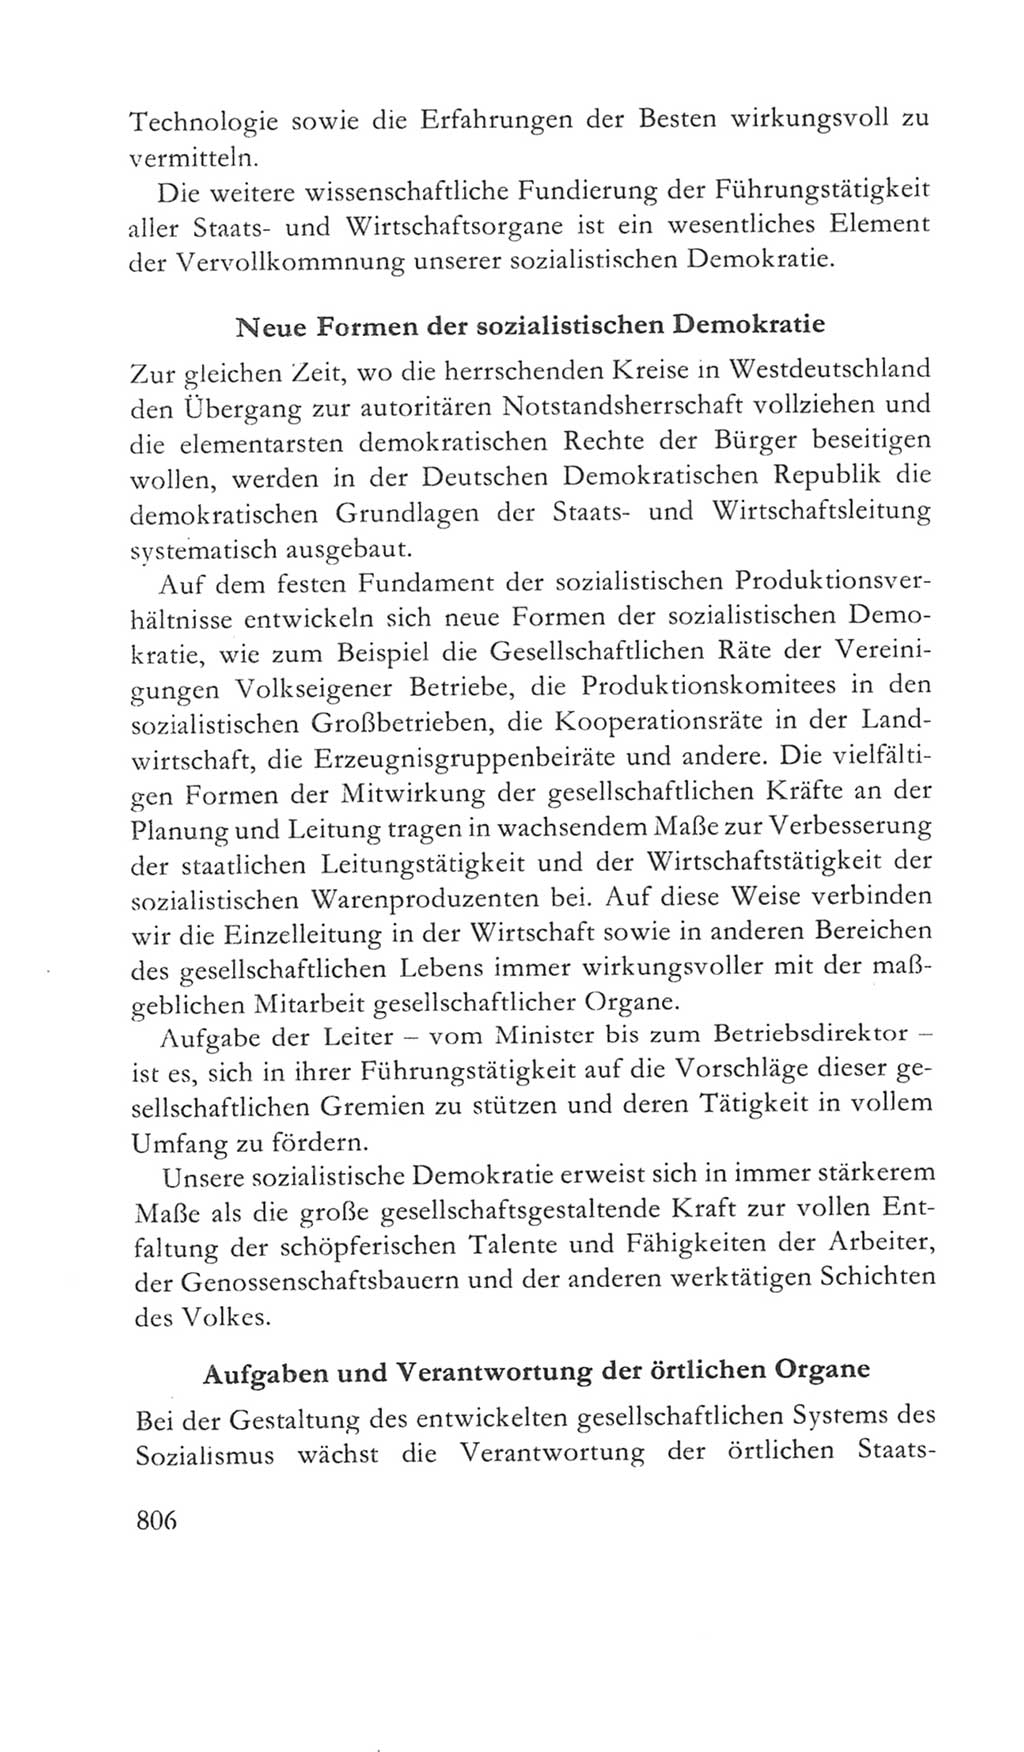 Volkskammer (VK) der Deutschen Demokratischen Republik (DDR) 5. Wahlperiode 1967-1971, Seite 806 (VK. DDR 5. WP. 1967-1971, S. 806)